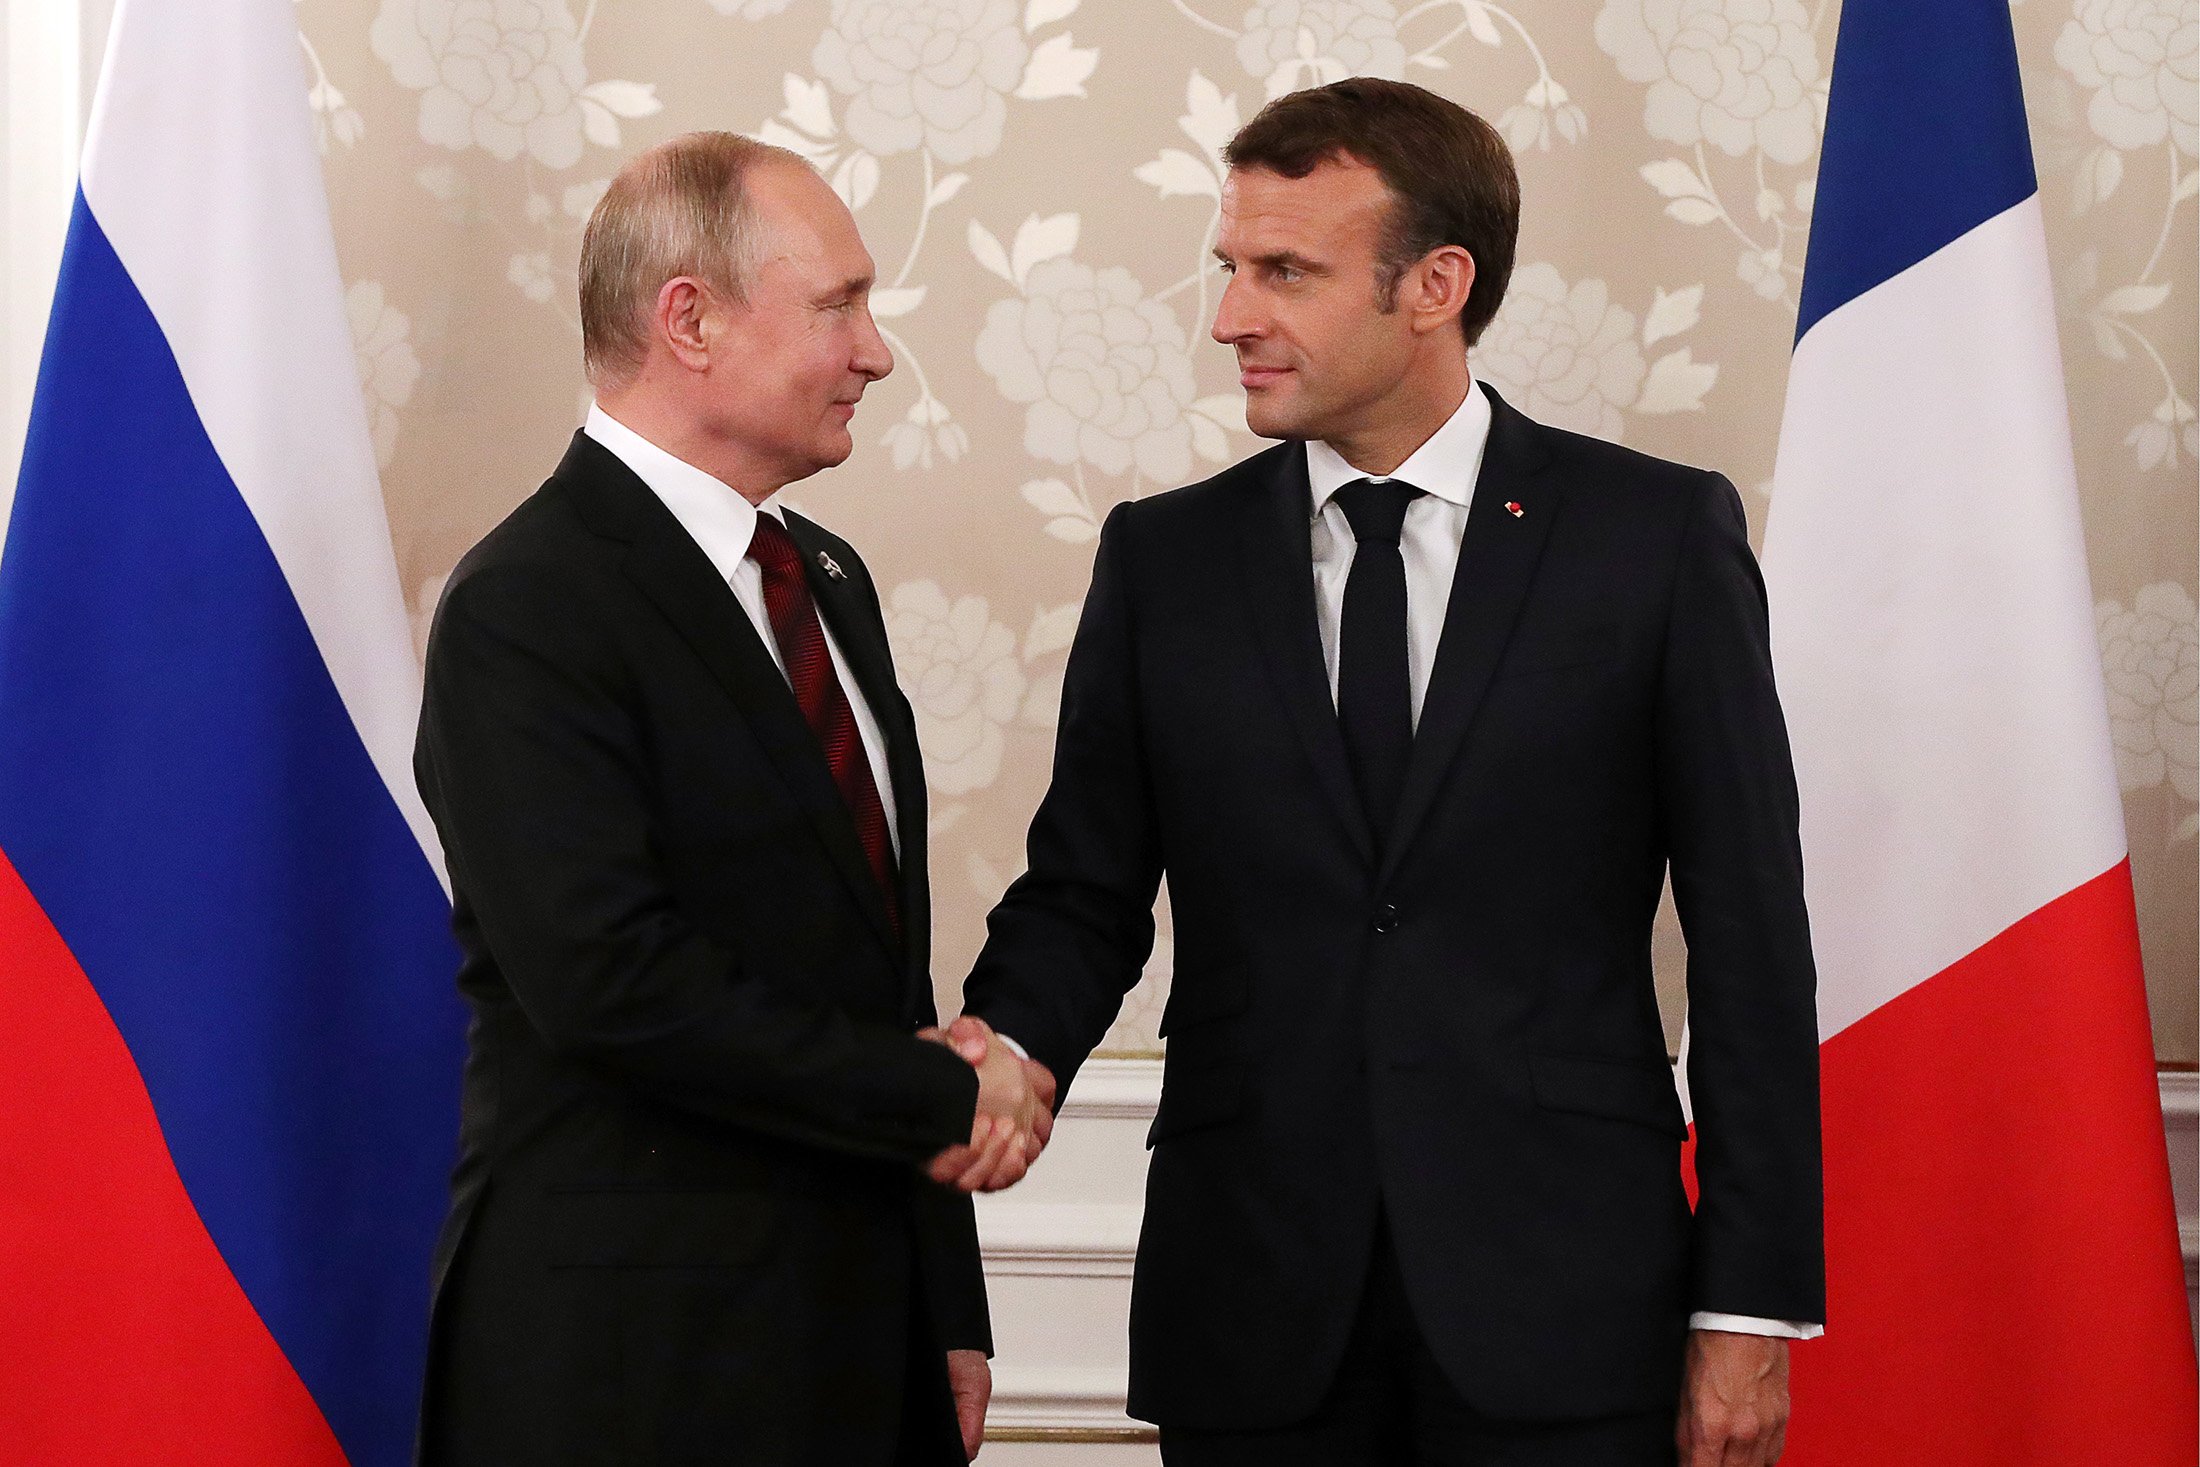  Emmanuel Macron a scandalizat Ucraina, dar şi aliaţii nordici. A sugerat că Rusiei ar trebui să i se ofere „garanţii de securitate”